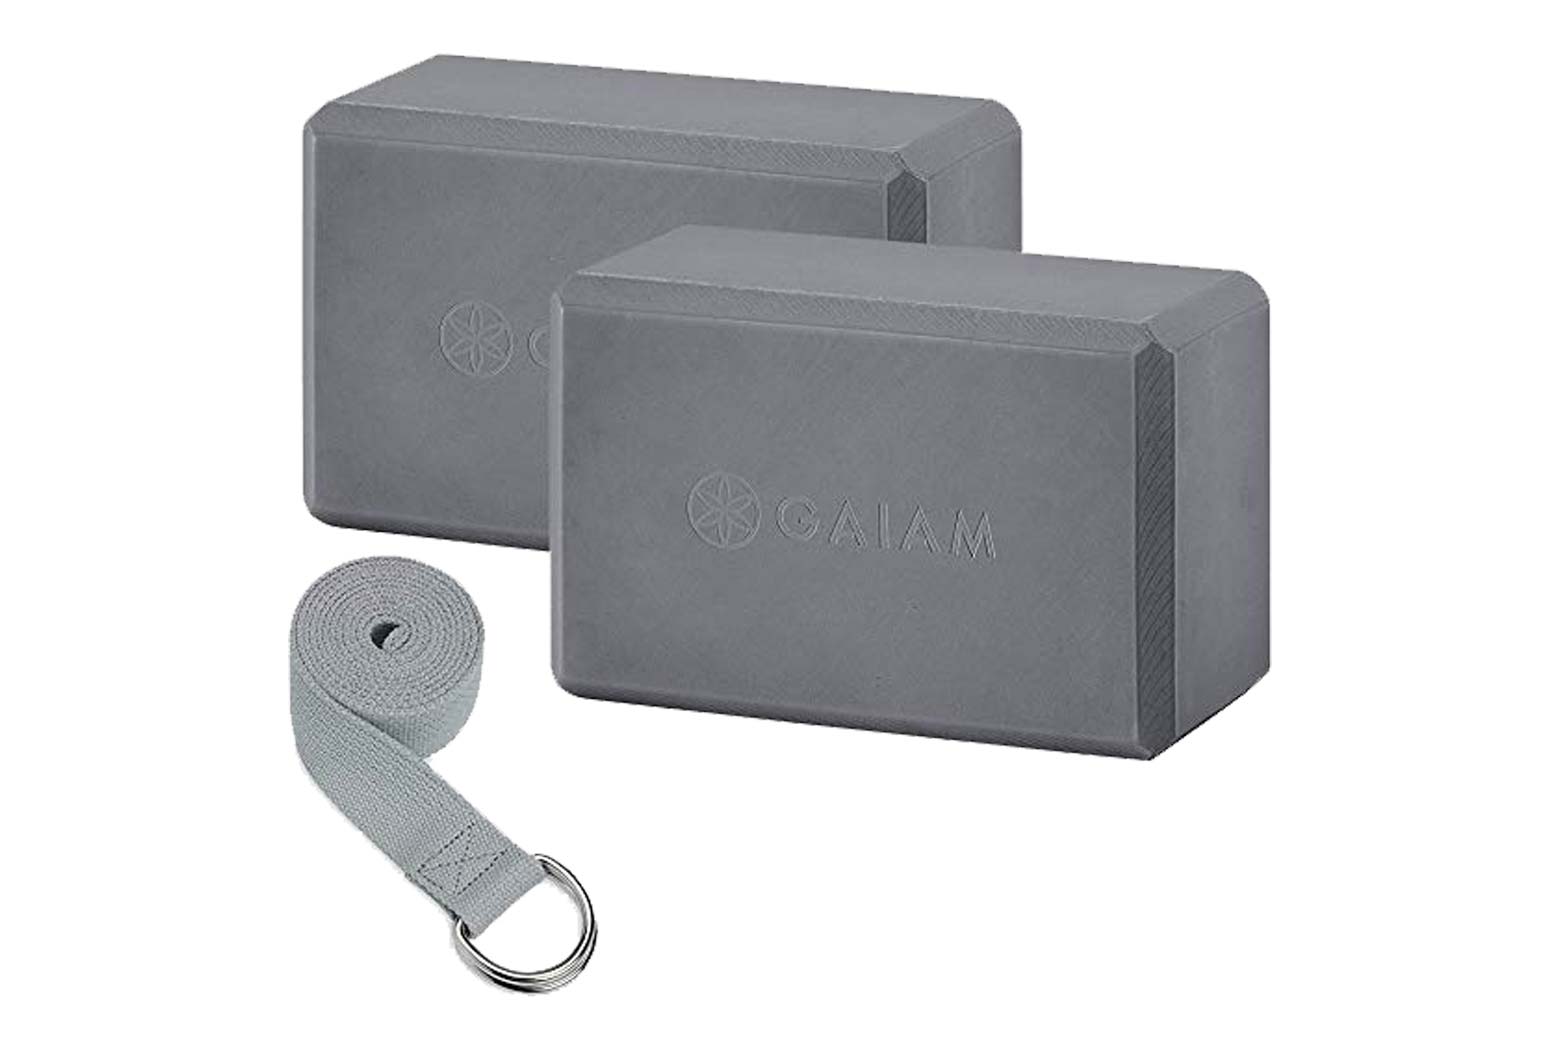 Gaiam Essentials yoga block and strap set